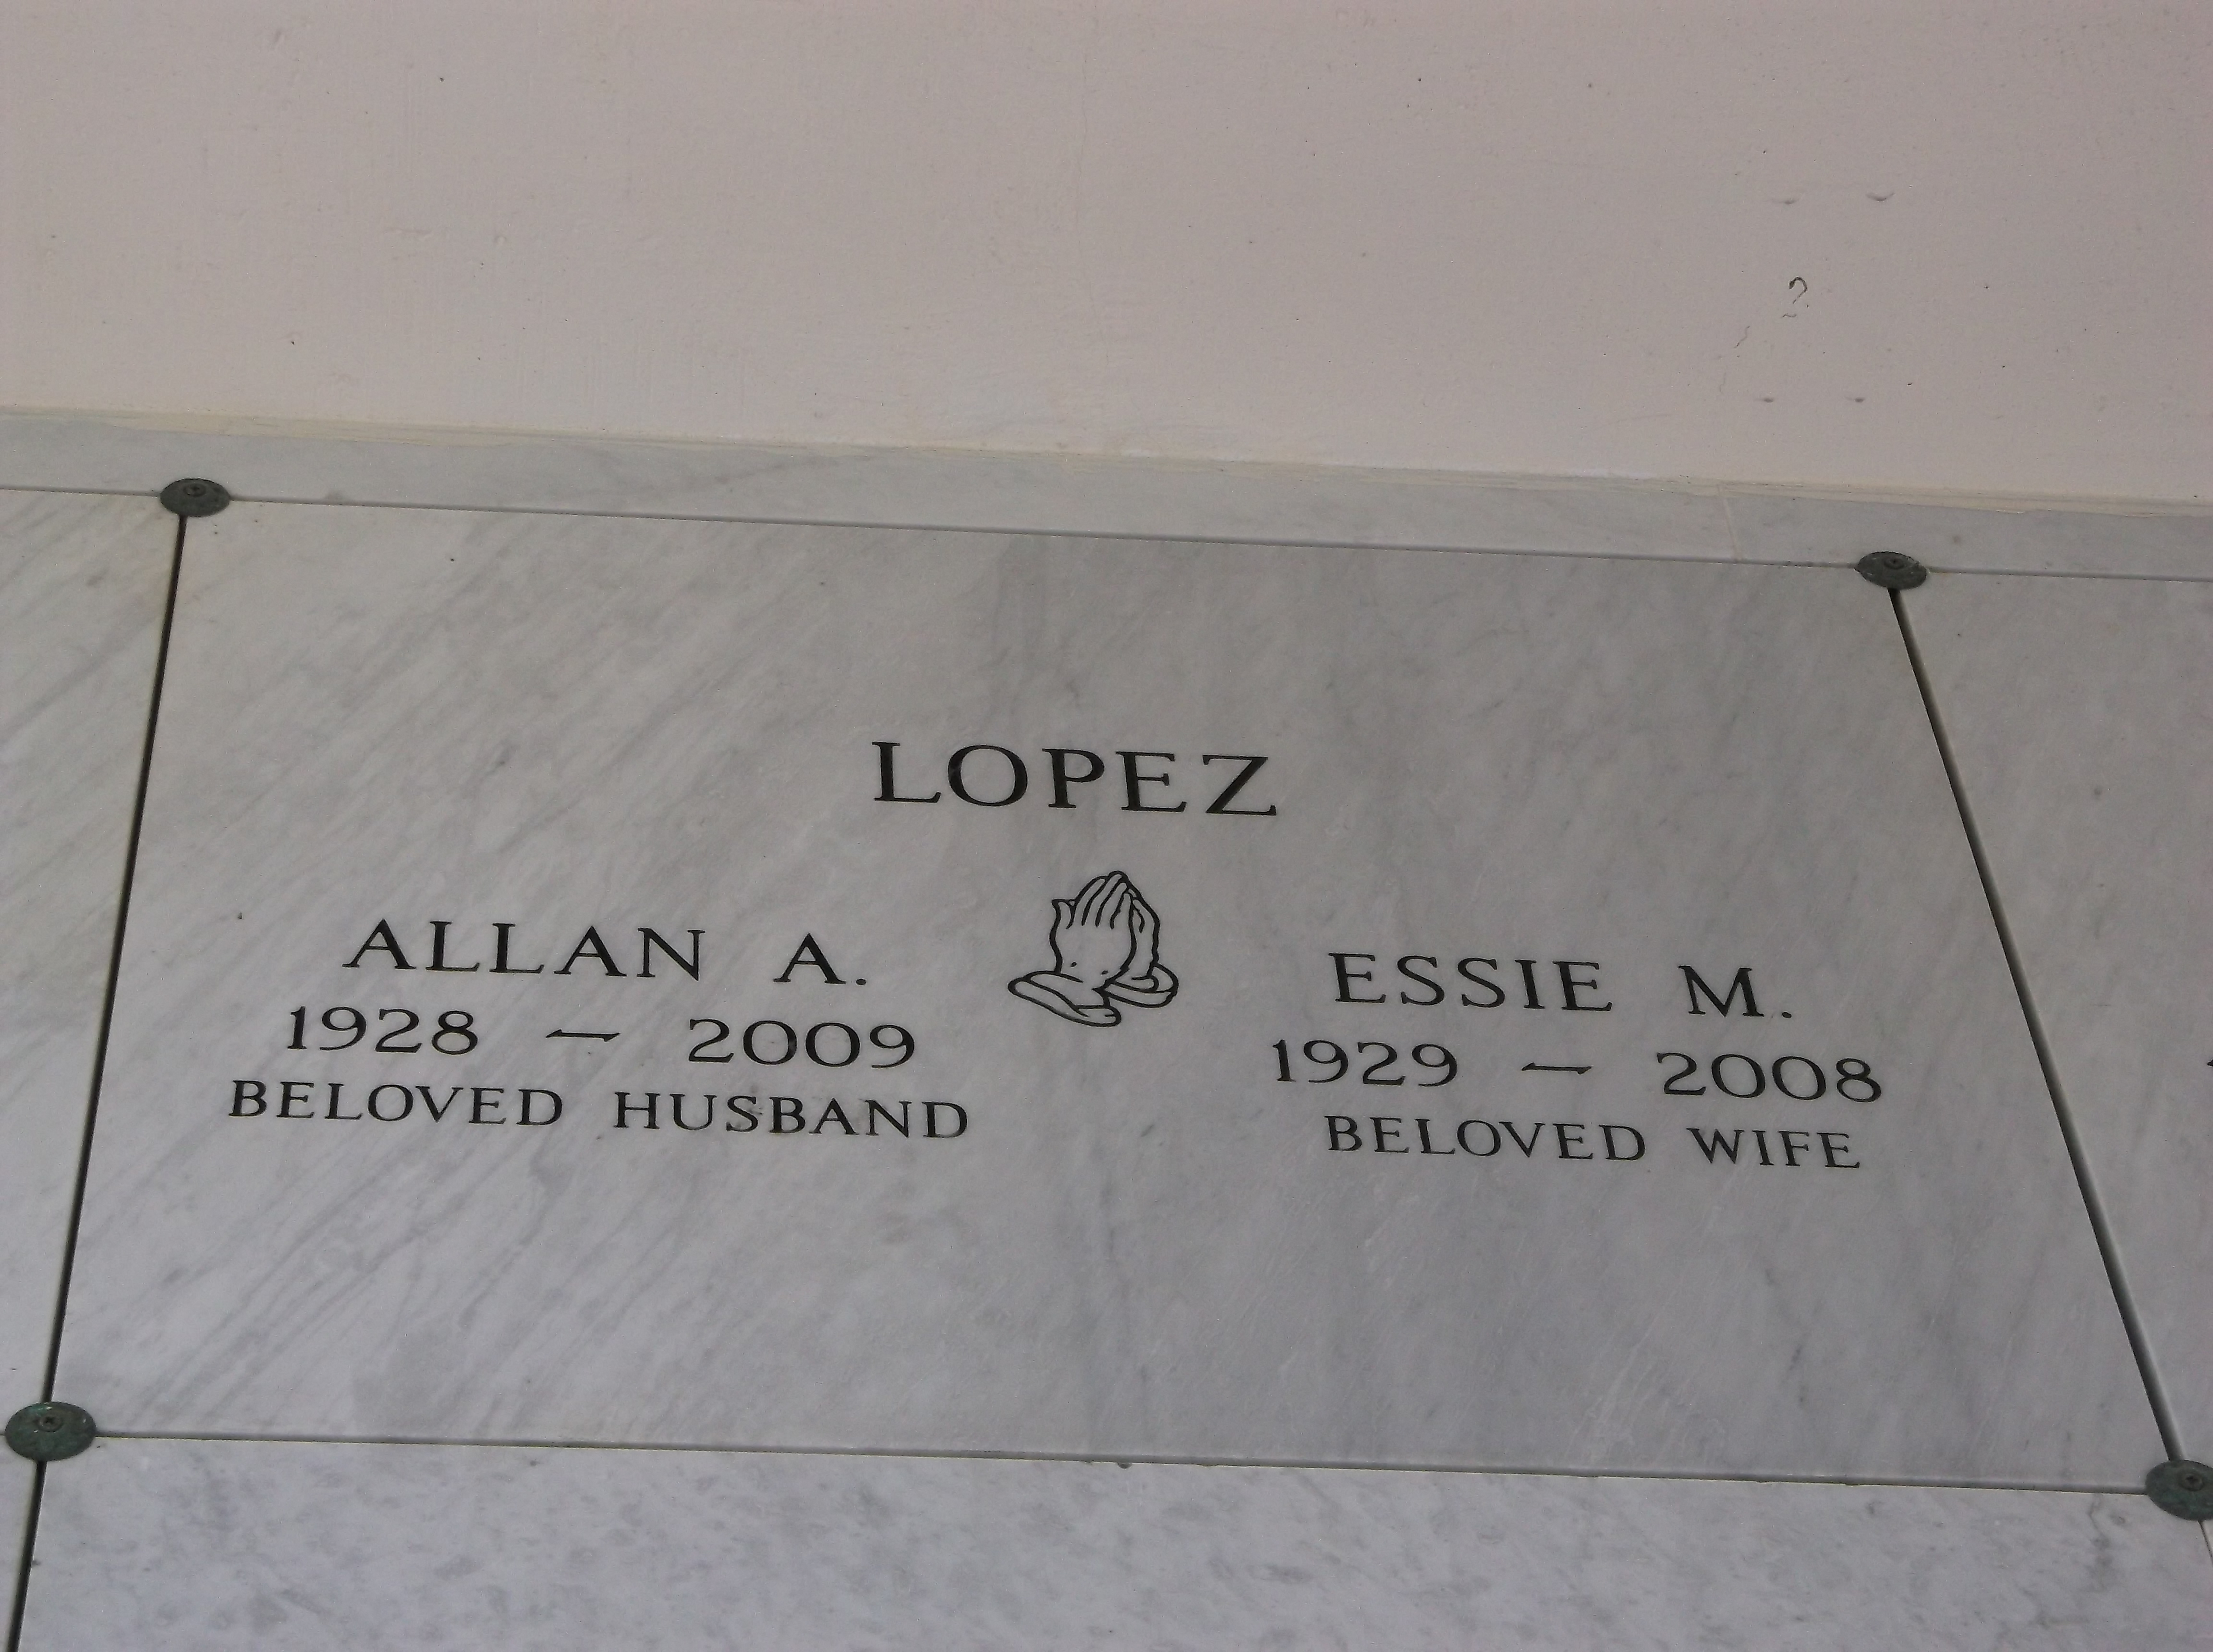 Allan A Lopez